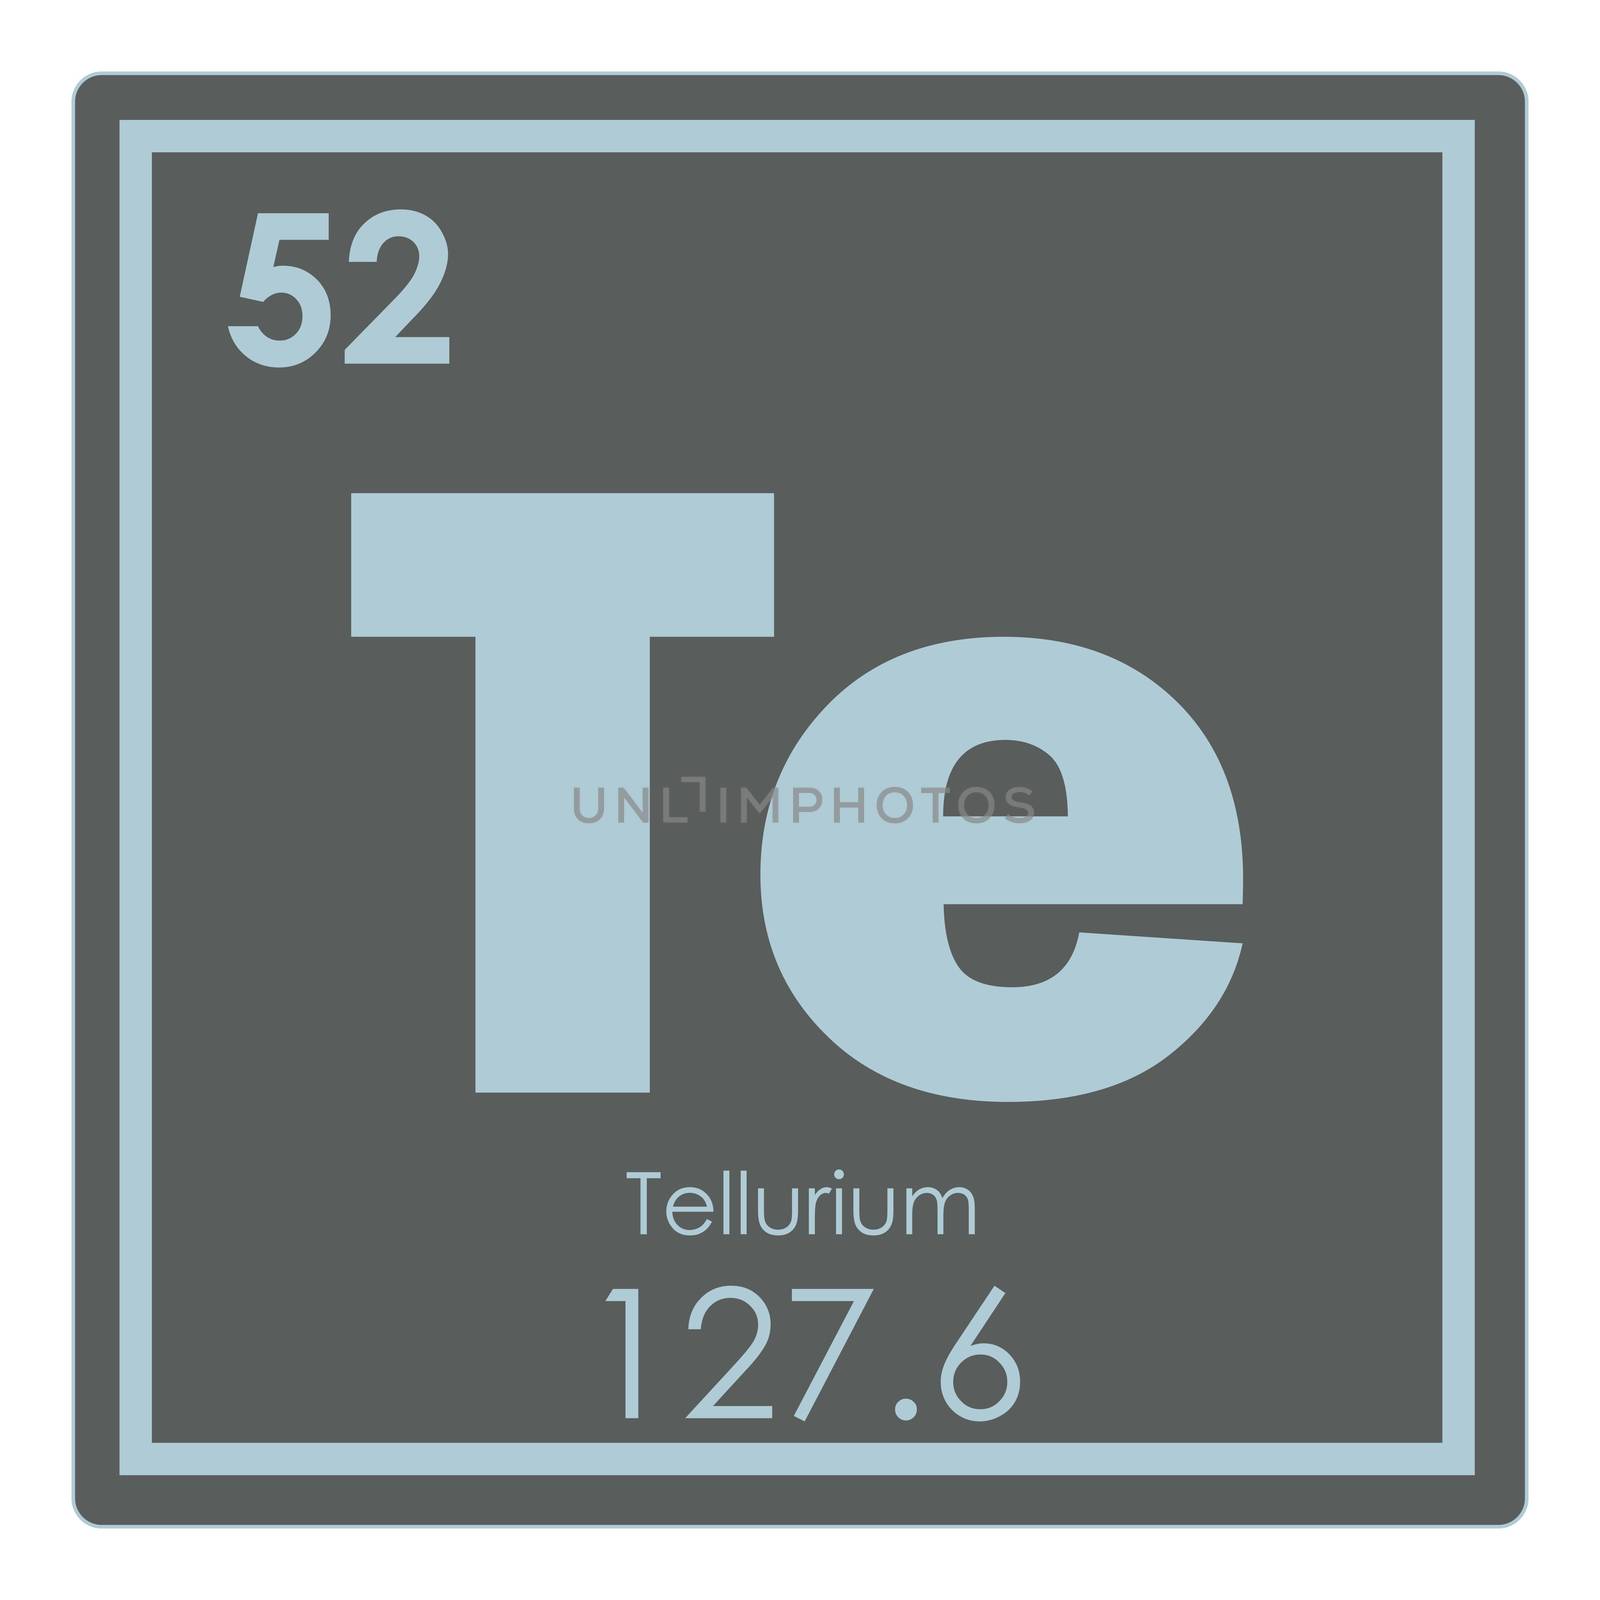 Tellurium chemical element periodic table science symbol